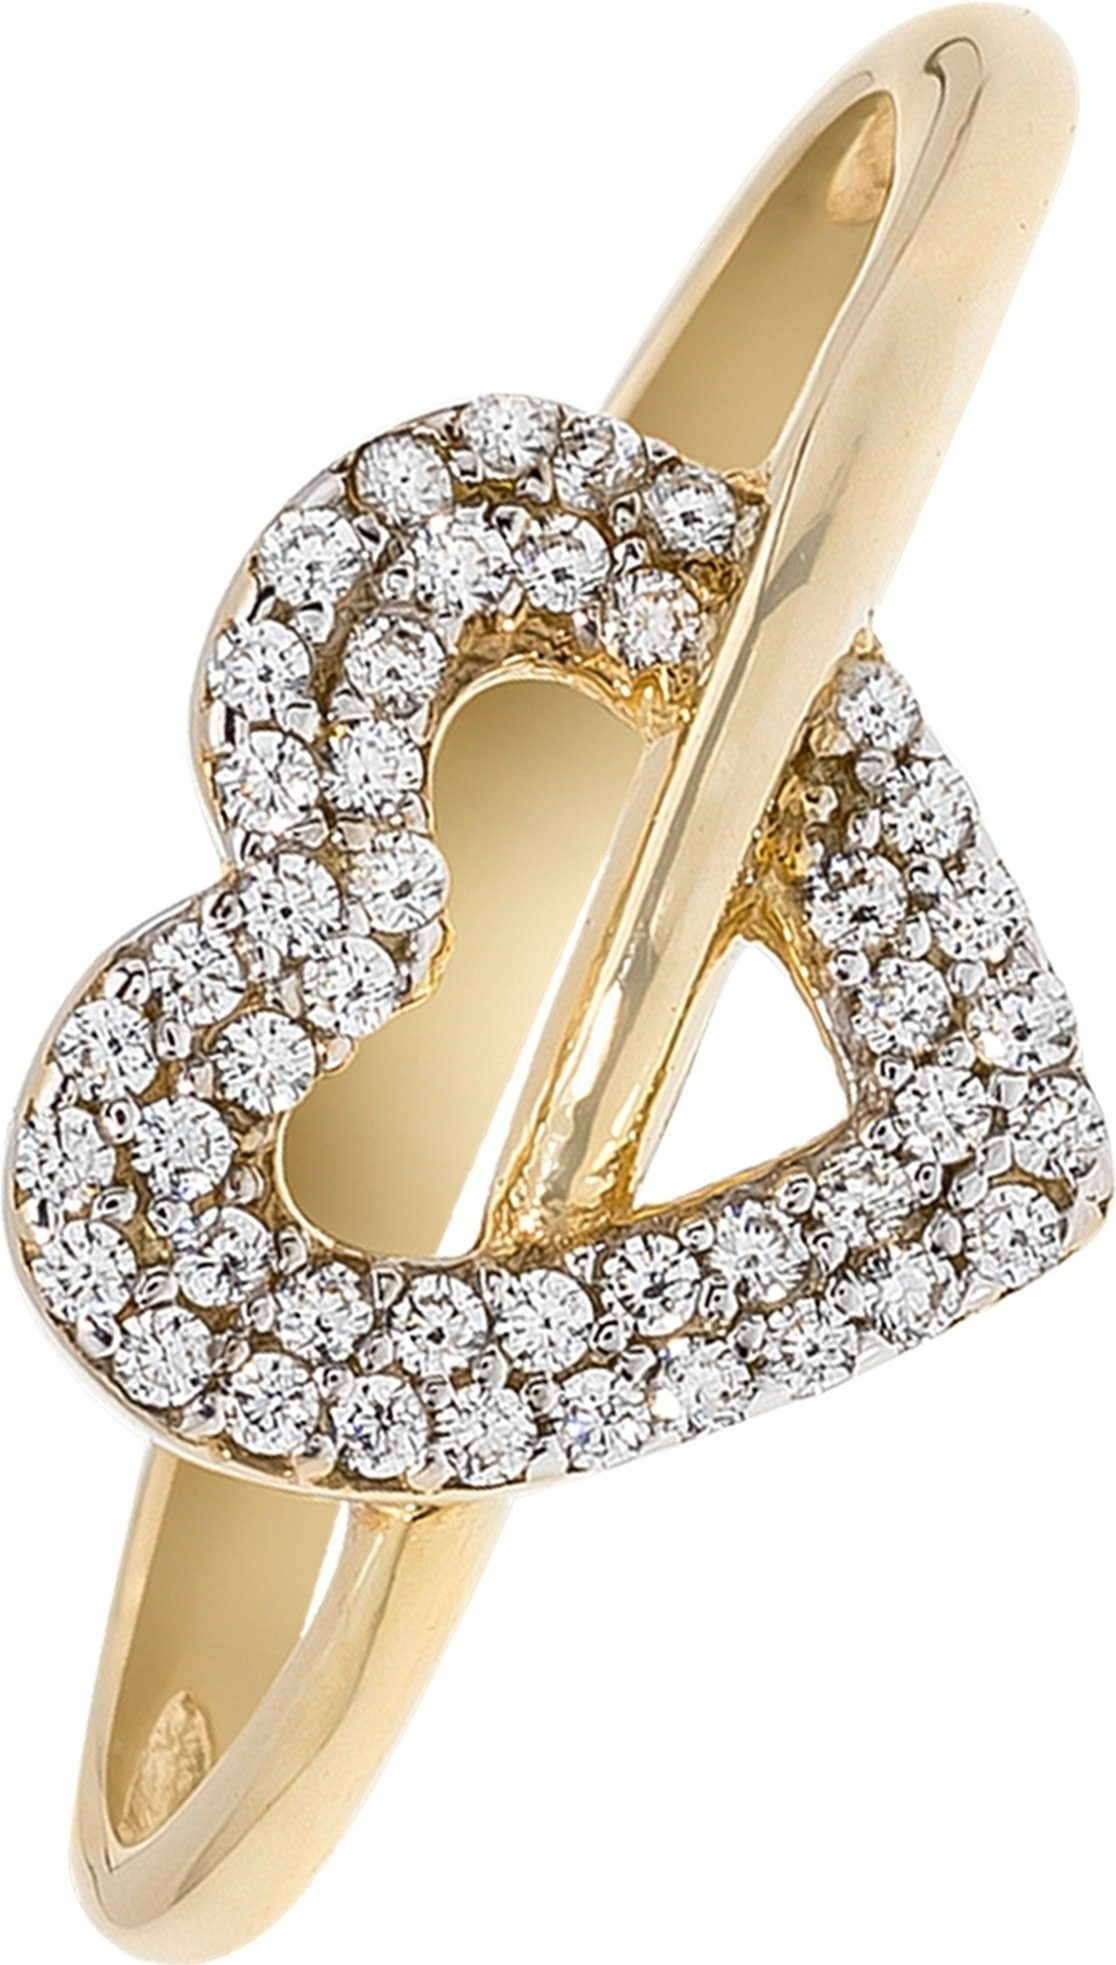 Balia Goldring Balia Ring für Damen Gold 8Kt Gr.58 (Fingerring), Damen Ringe, 58 (18,4) Herz, 333 Gelbgold - 8 Karat